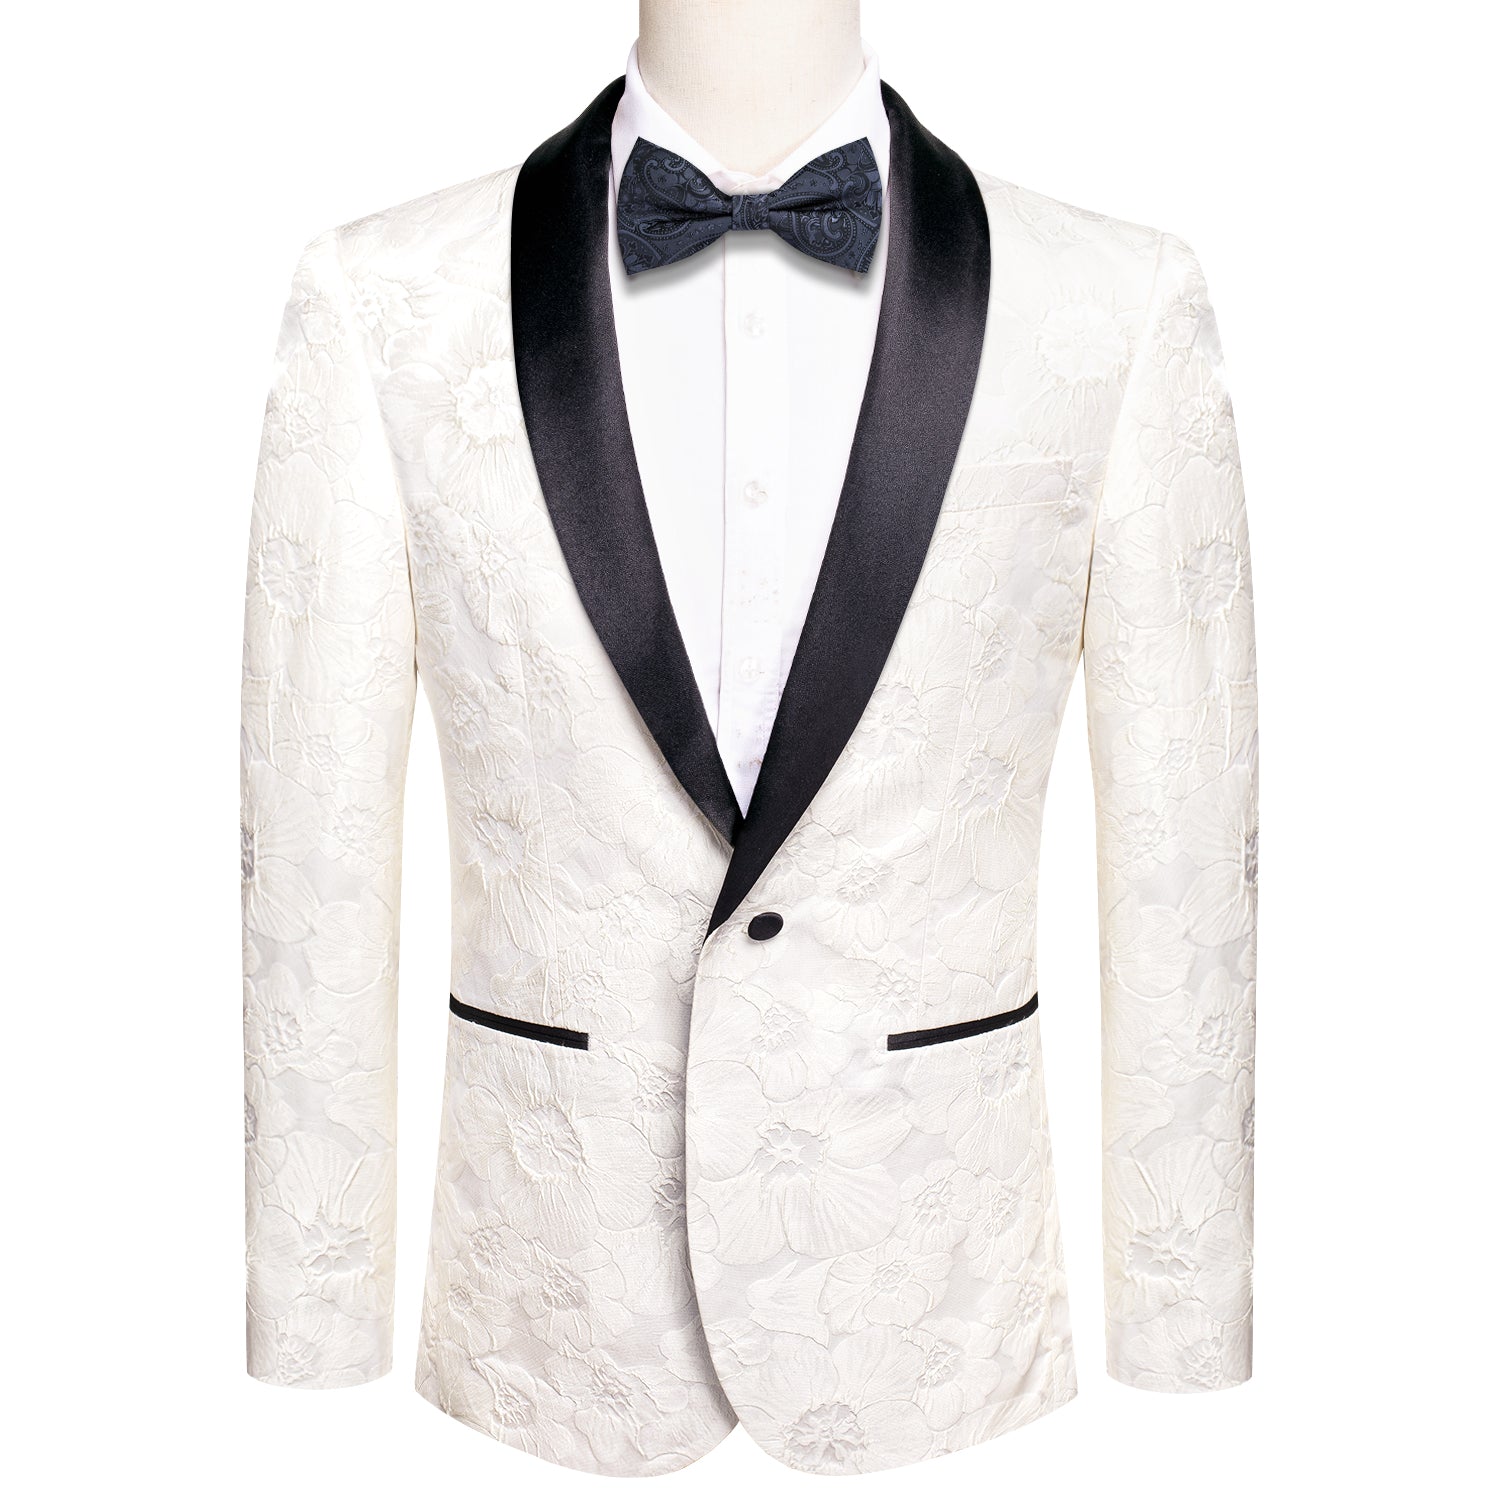 New Luxury Pure White Floral Men's Suit Set